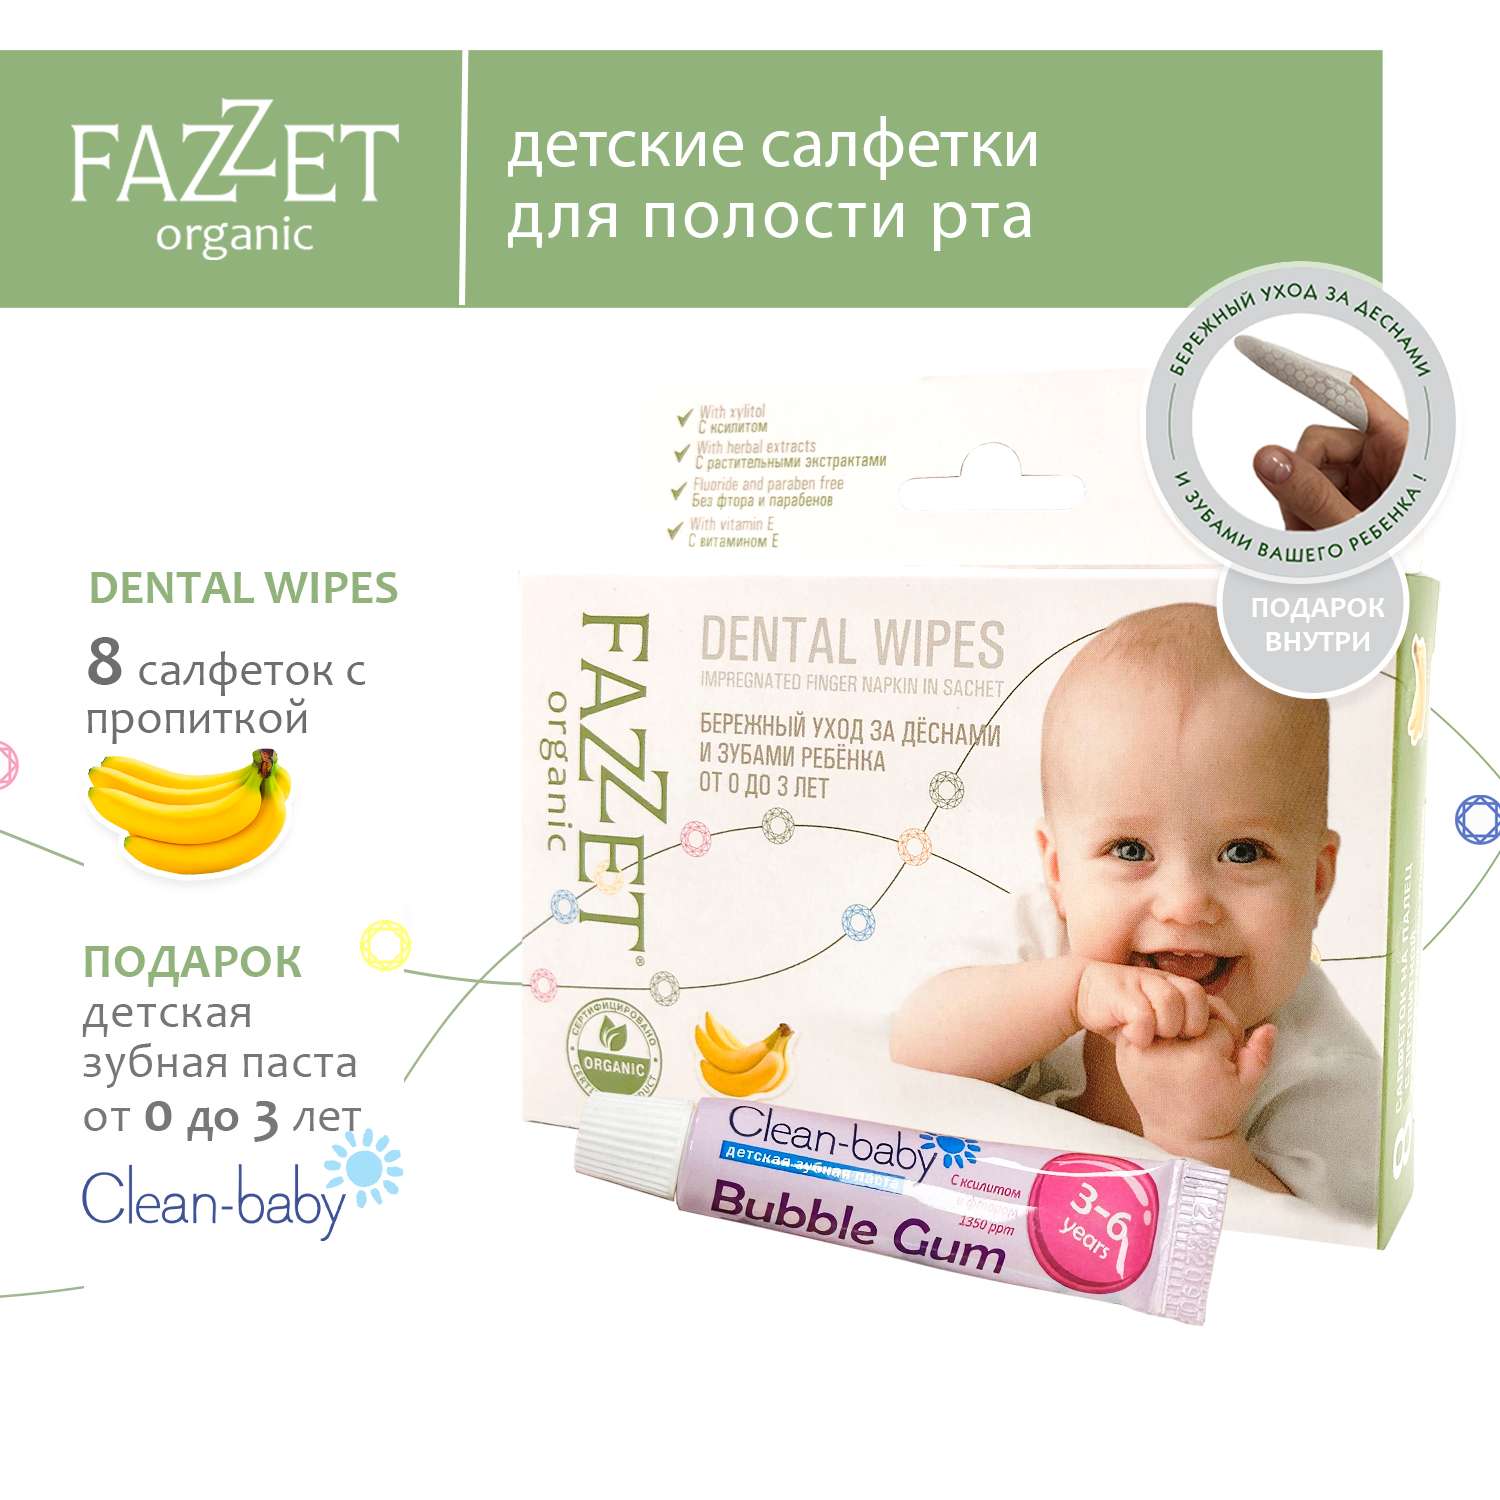 Детские салфетки Fazzet ORGANIC для полости рта 0-3 года 8 шт и подарок зубная паста Clean-baby 3-6 лет 5 мл - фото 2